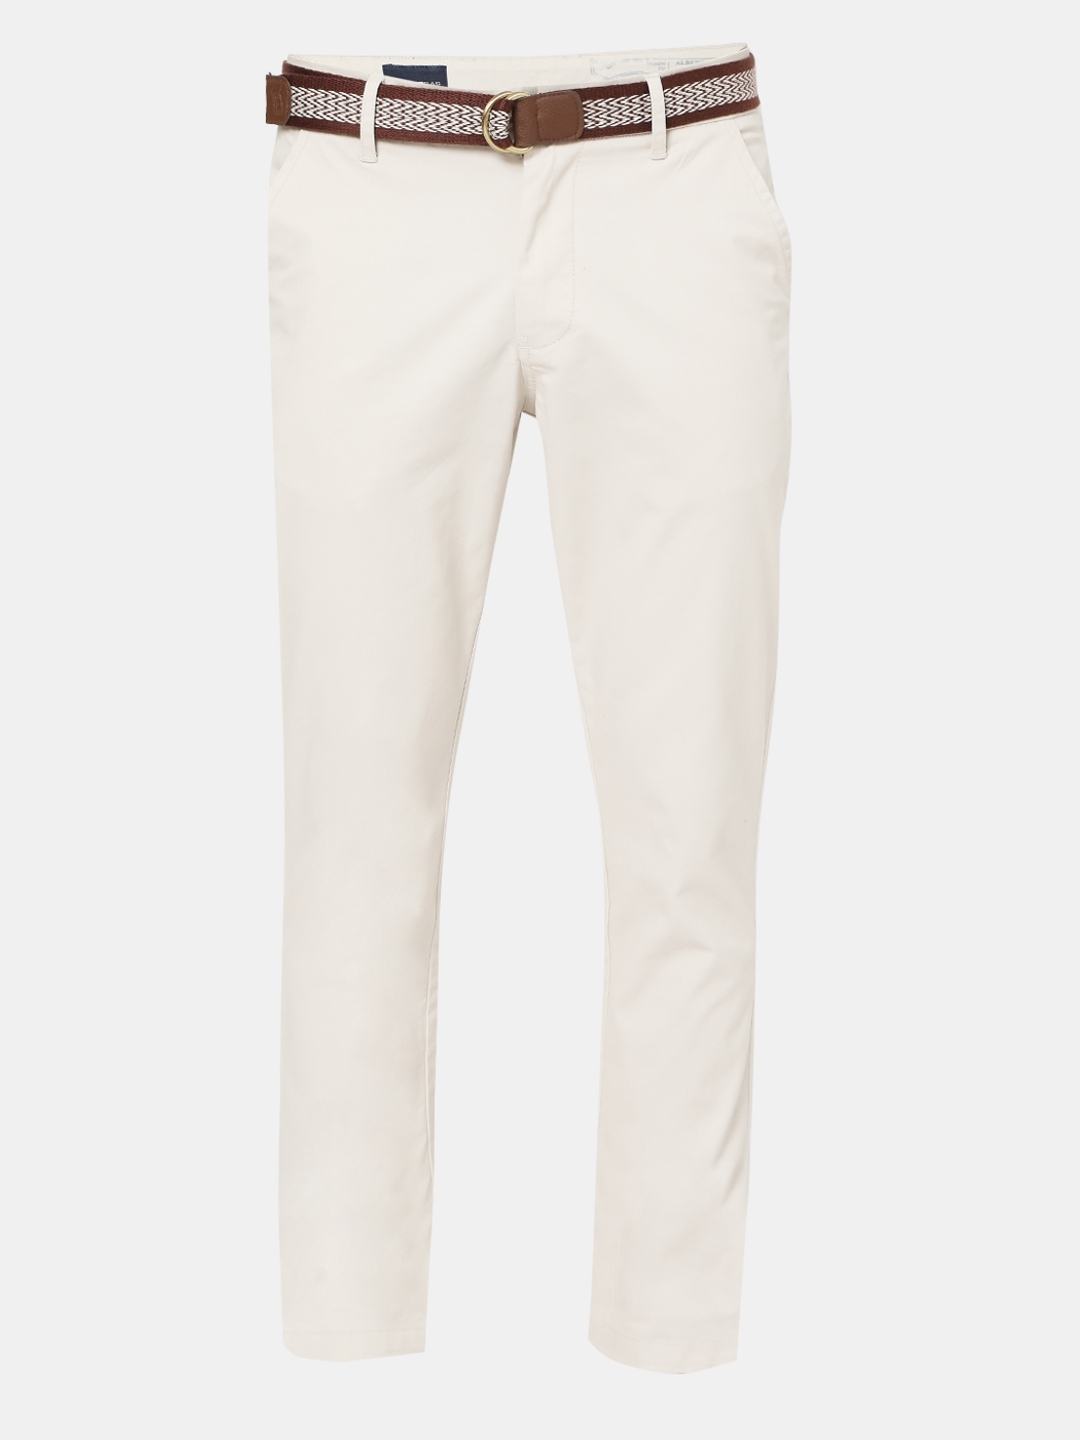 Buy Dim Grey Slim Fit Cotton Chino Pants for Men Online at Bewakoof